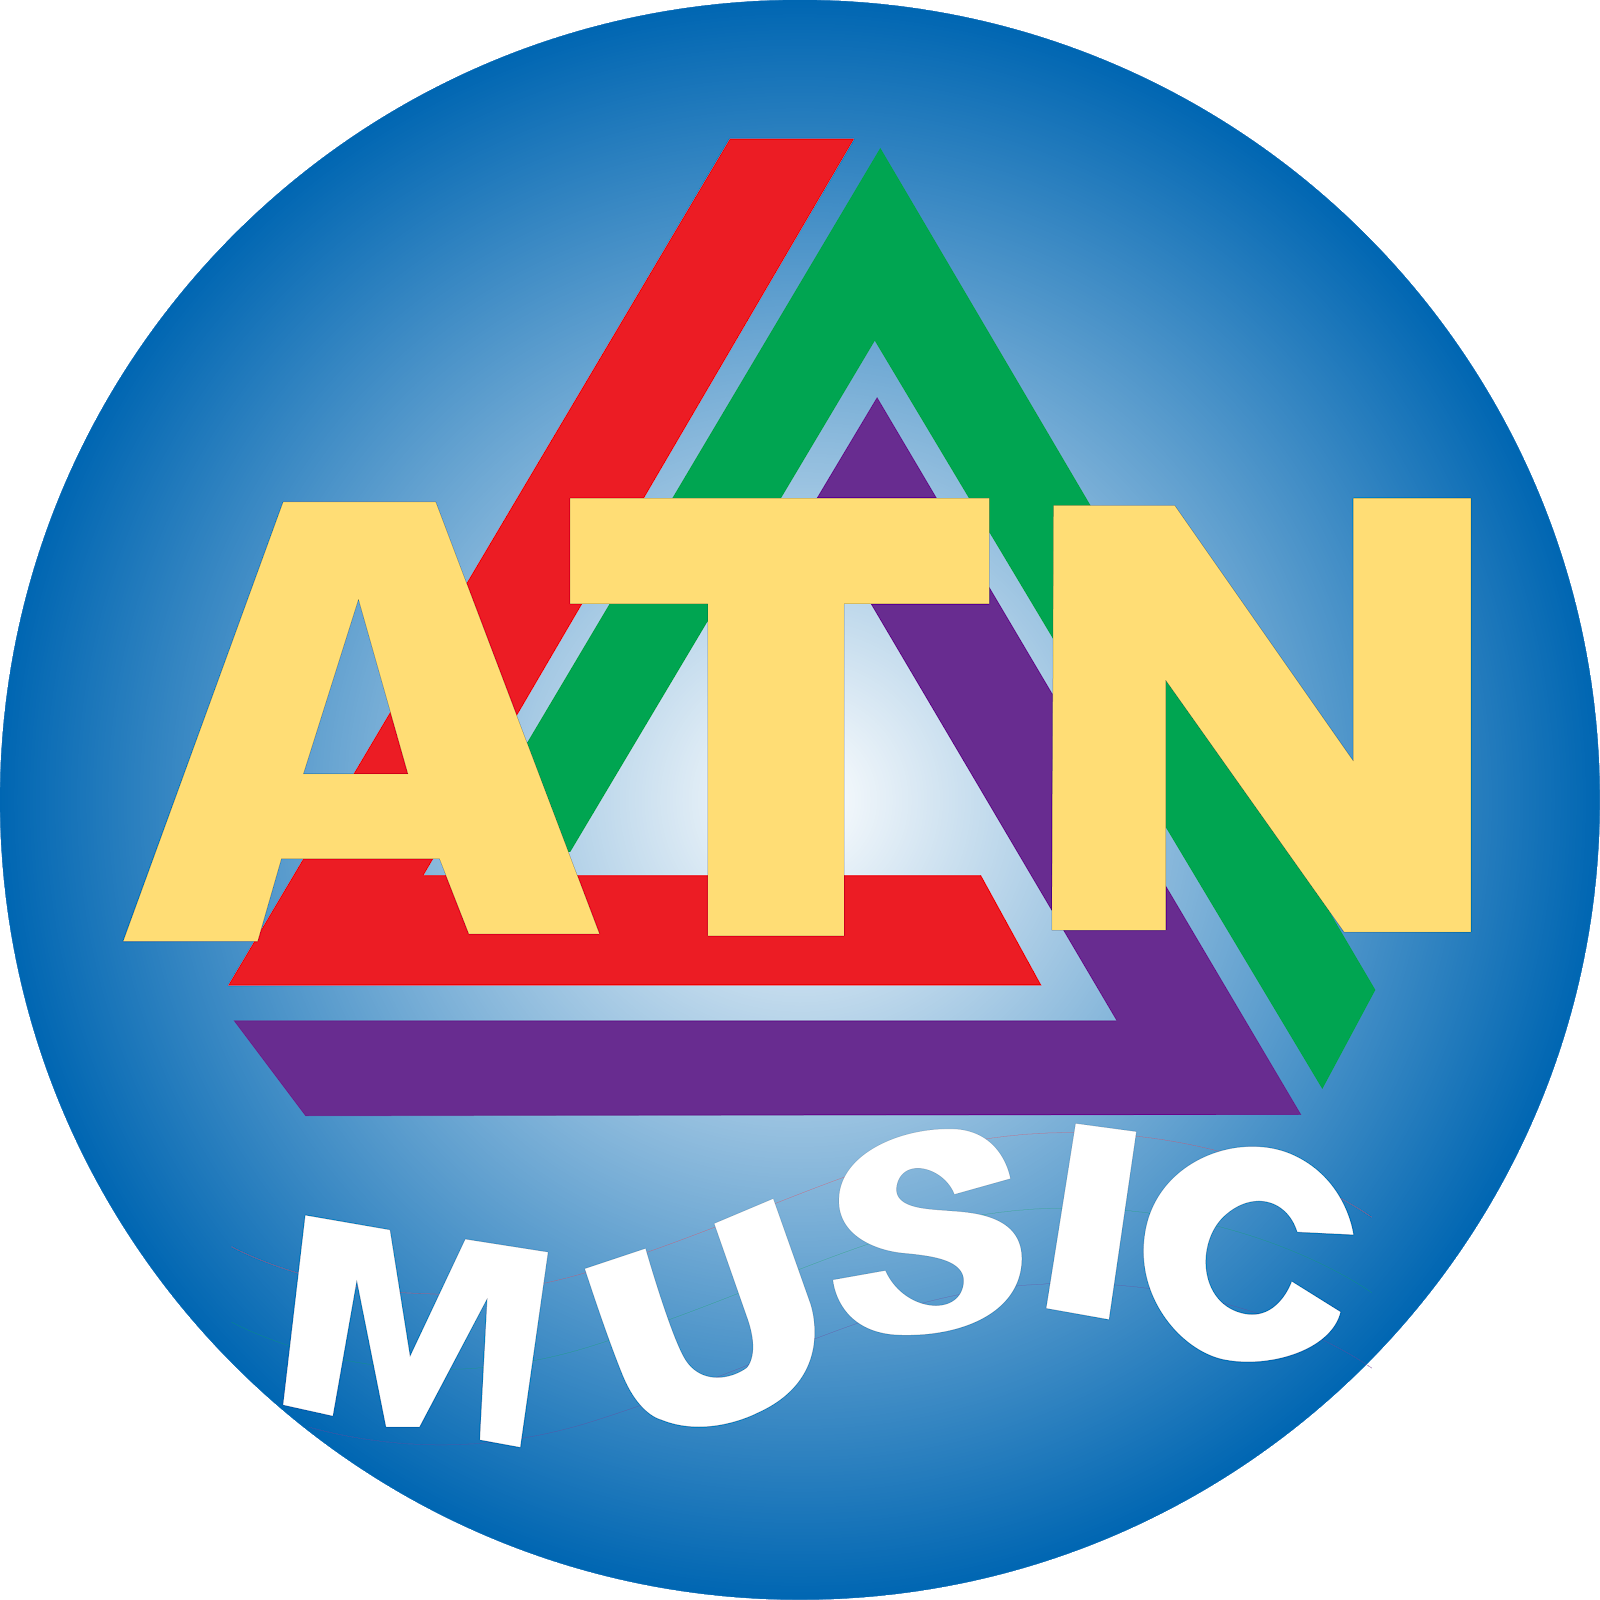 ATN MUSIC